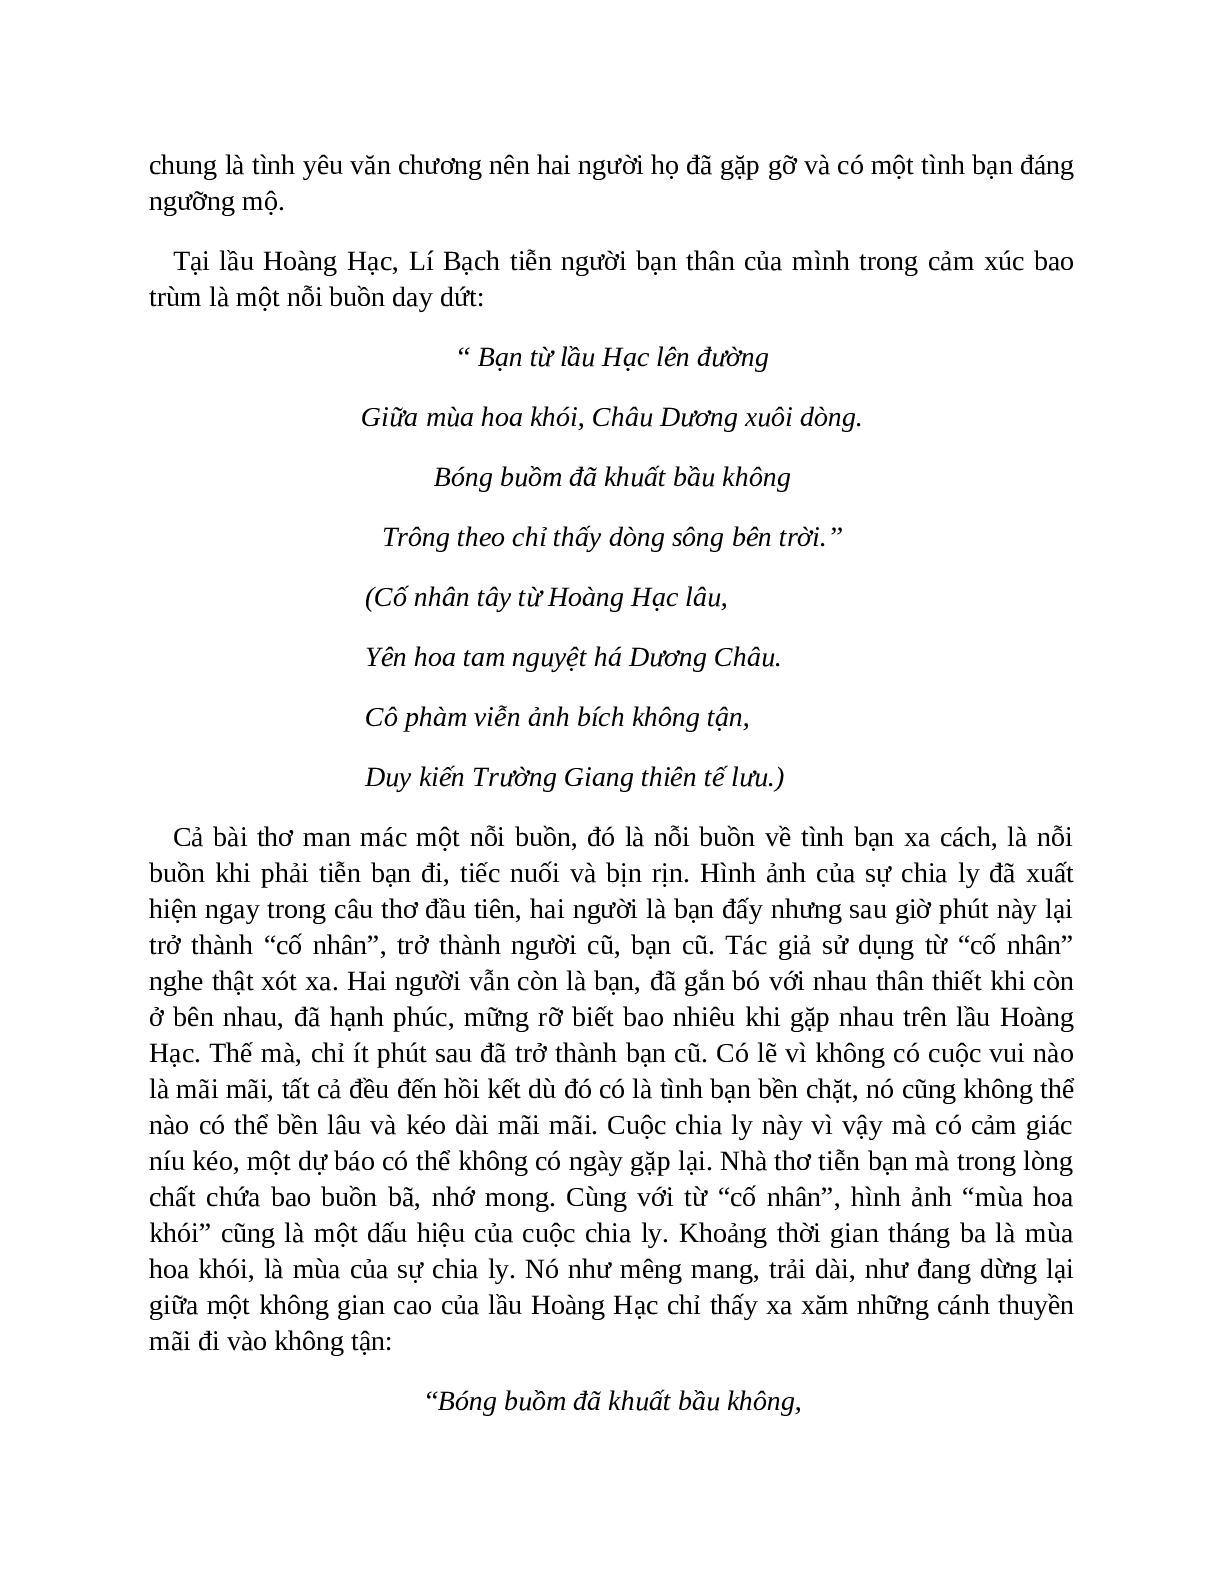 Sơ đồ tư duy bài Tại lầu Hoàng Hạc tiễn Mạnh Hạo Nhiên đi Quảng Lăng dễ nhớ, ngắn nhất - Ngữ văn lớp 10 (trang 7)